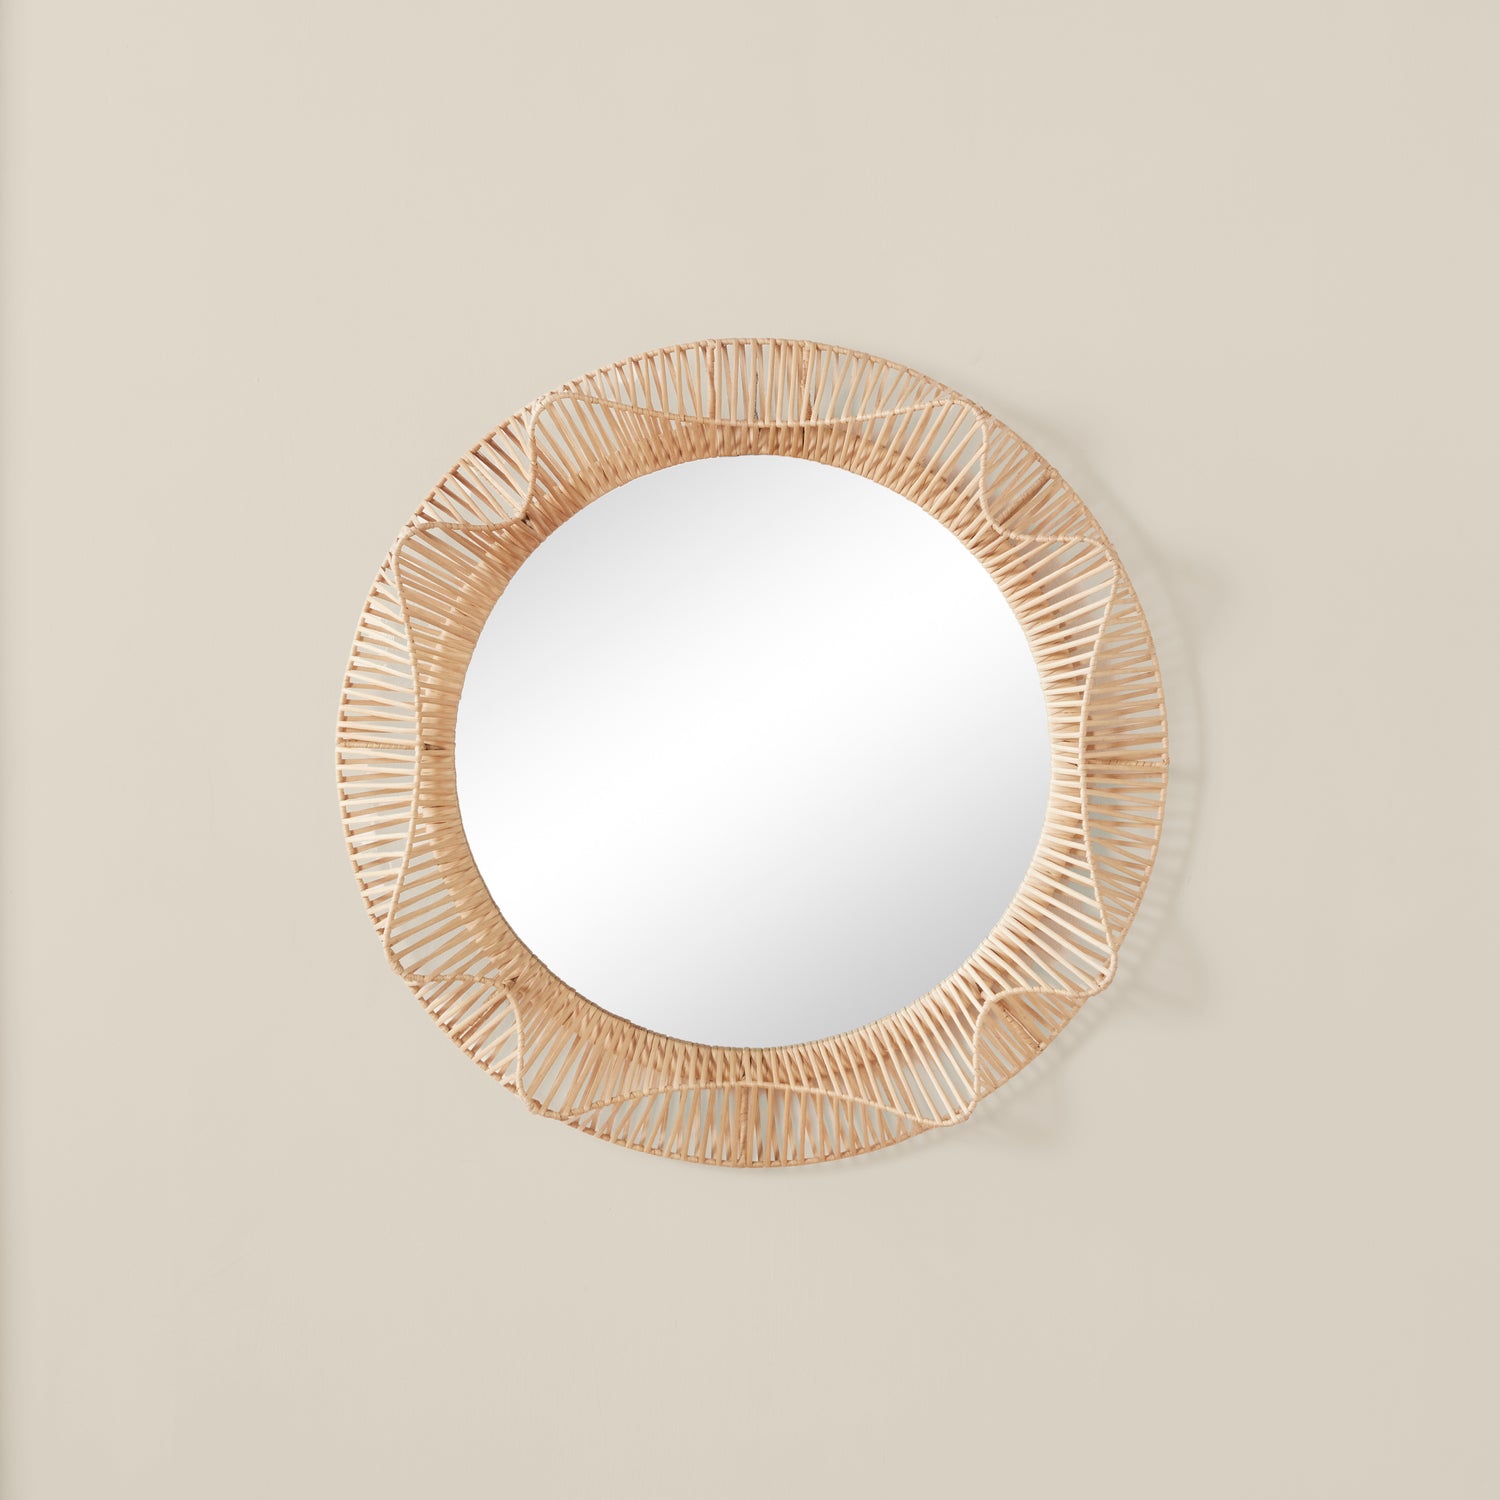 Clemente Round Mirror